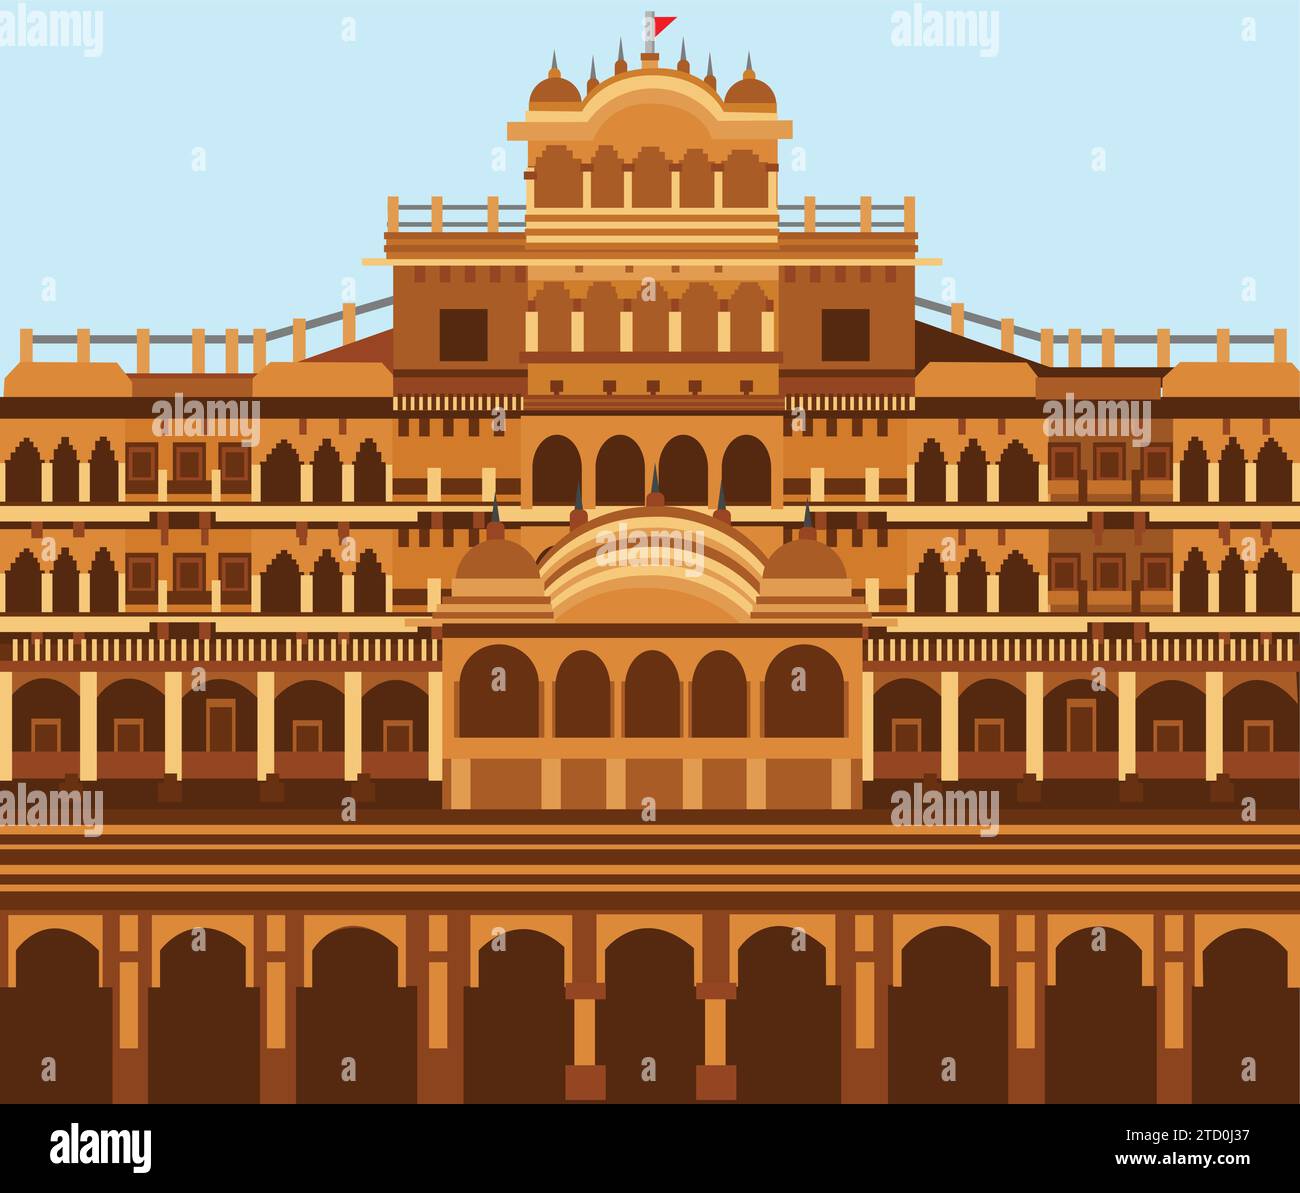 Illustrazione vettoriale del famoso Palazzo della città, Jaipur, India. Business Travel and Tourism Concept Illustrazione Vettoriale